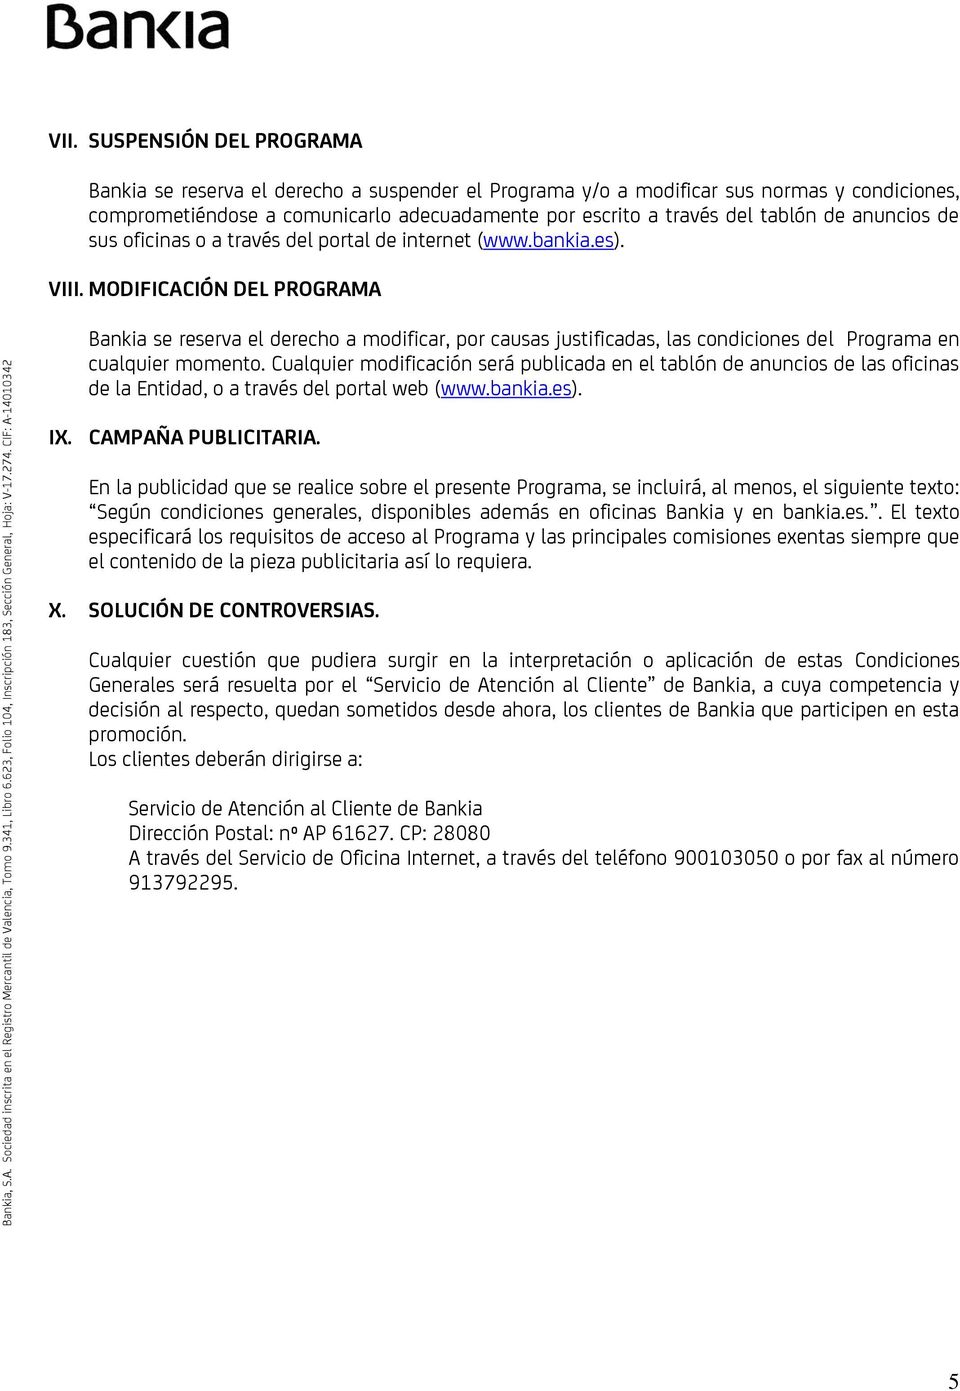 MODIFICACIÓN DEL PROGRAMA Bankia se reserva el derecho a modificar, por causas justificadas, las condiciones del Programa en cualquier momento.